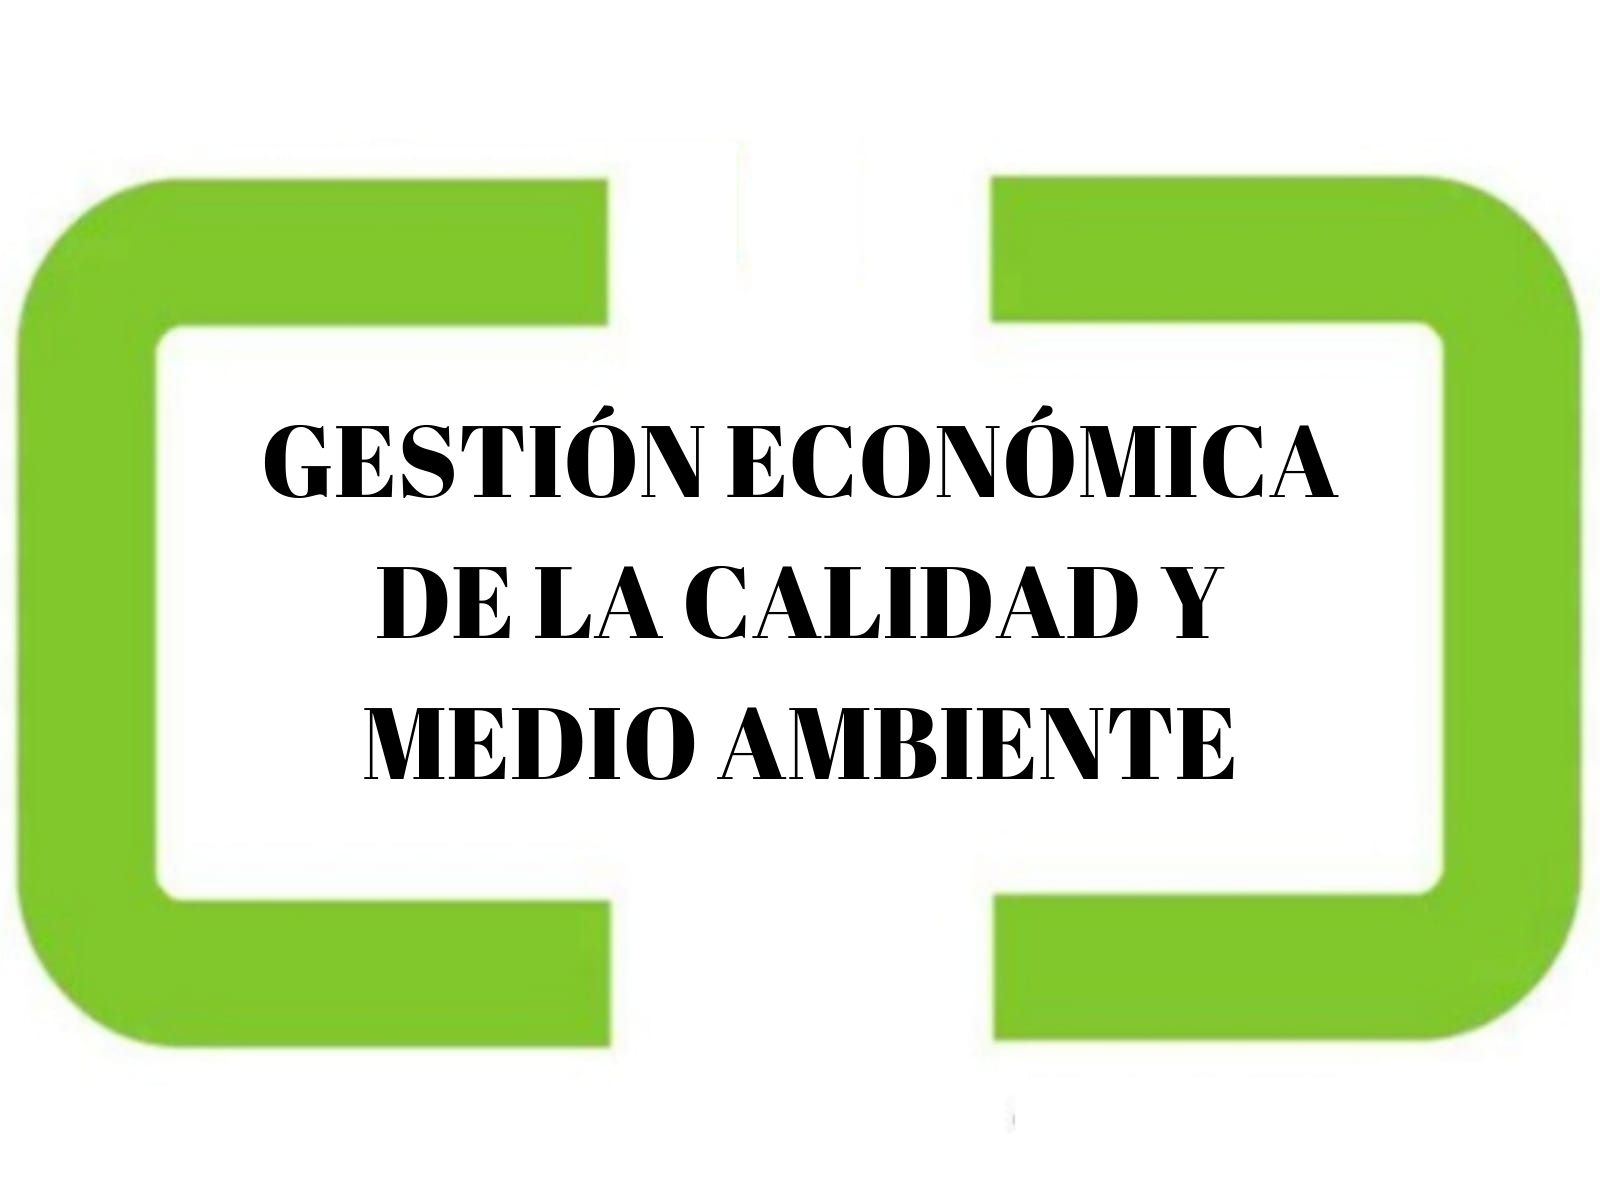 GESTIÓN ECONÓMICA DE LA CALIDAD Y MEDIO AMBIENTE